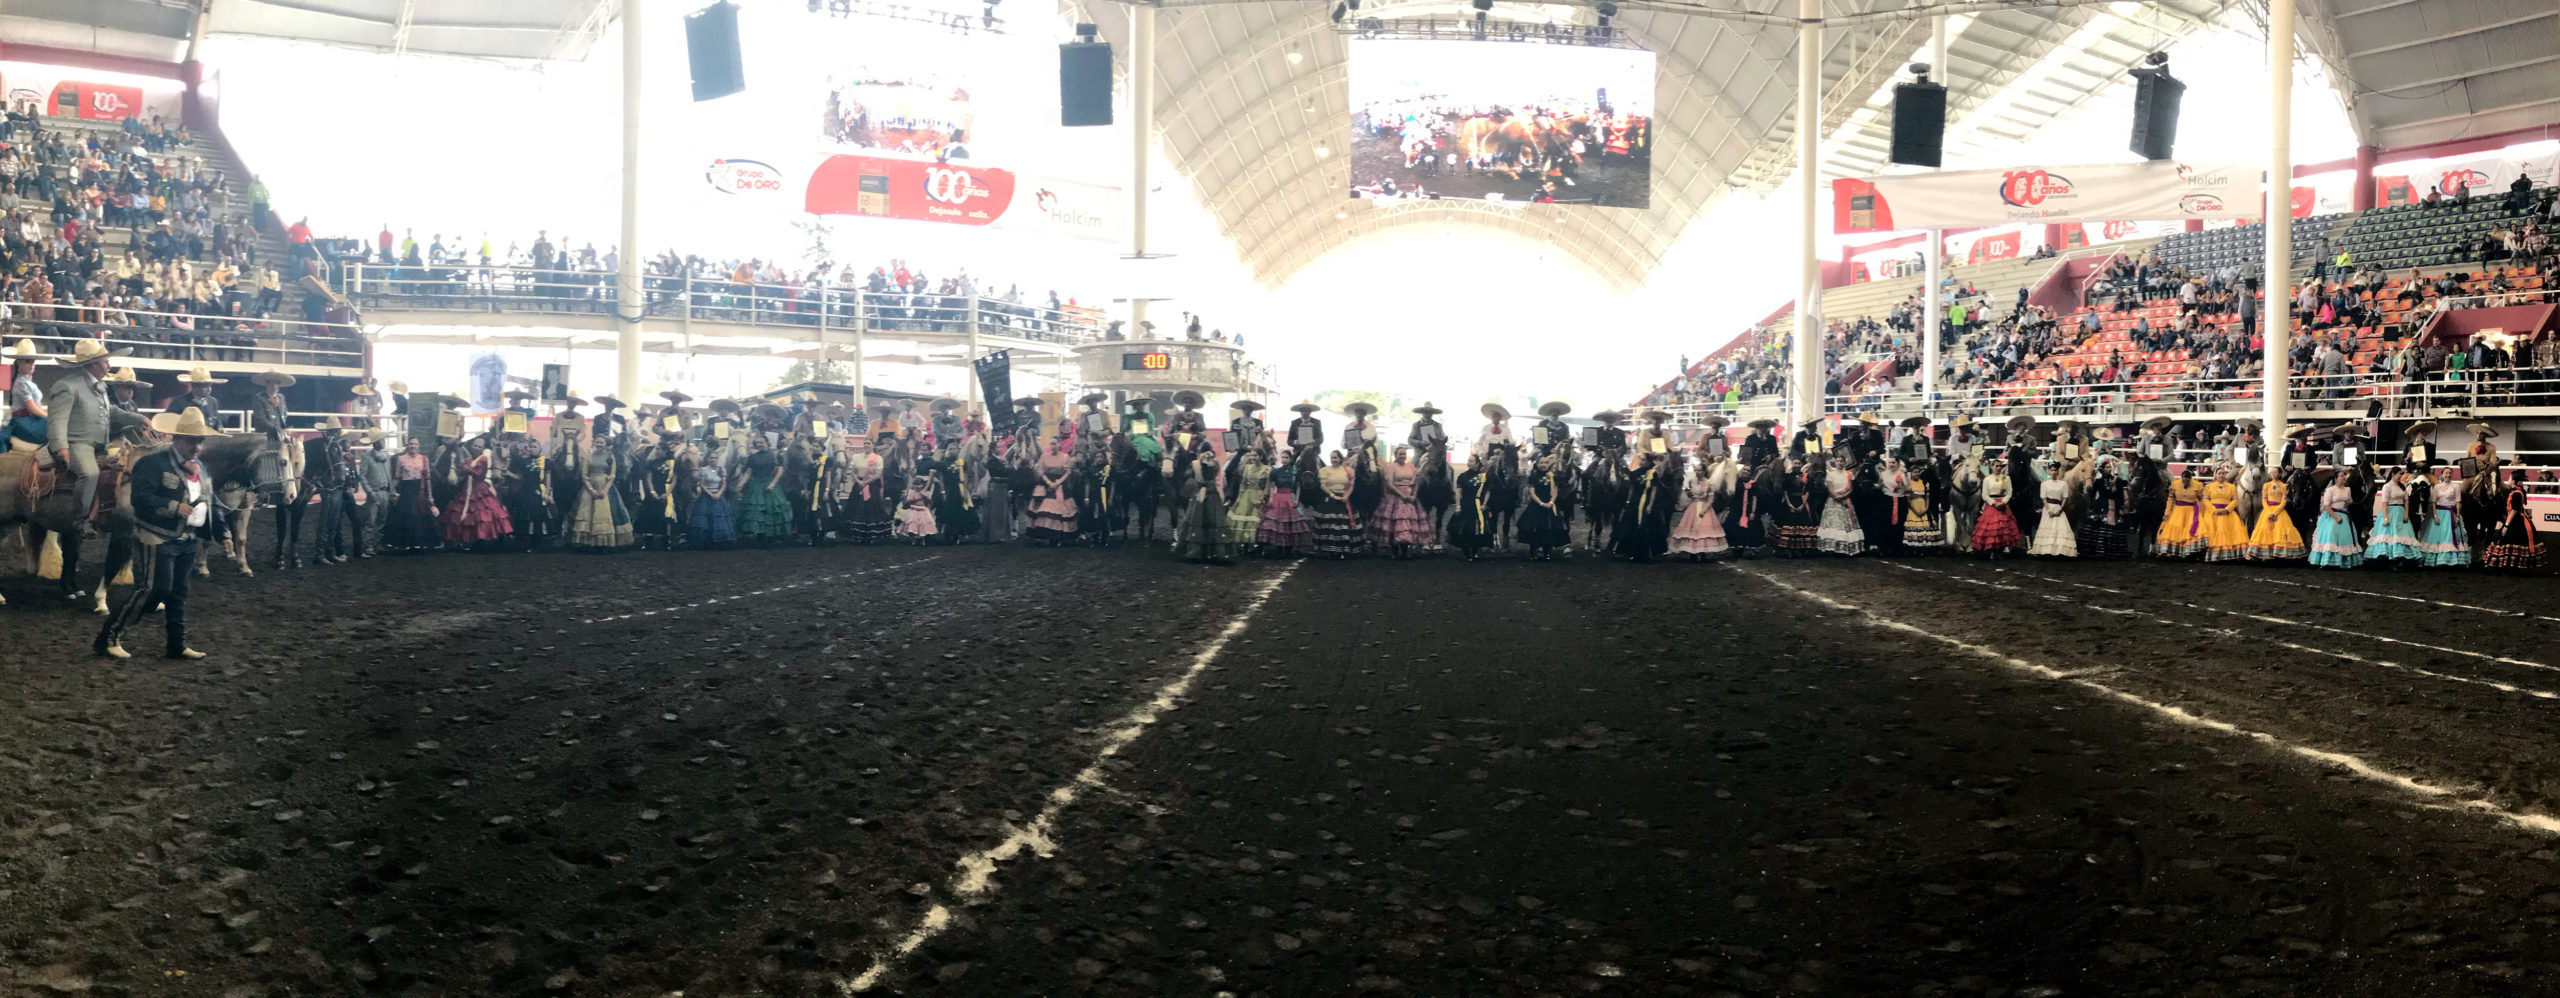 Los campeones nacionales charros completos desfilaron a caballo y recibieron el homenaje de la afición